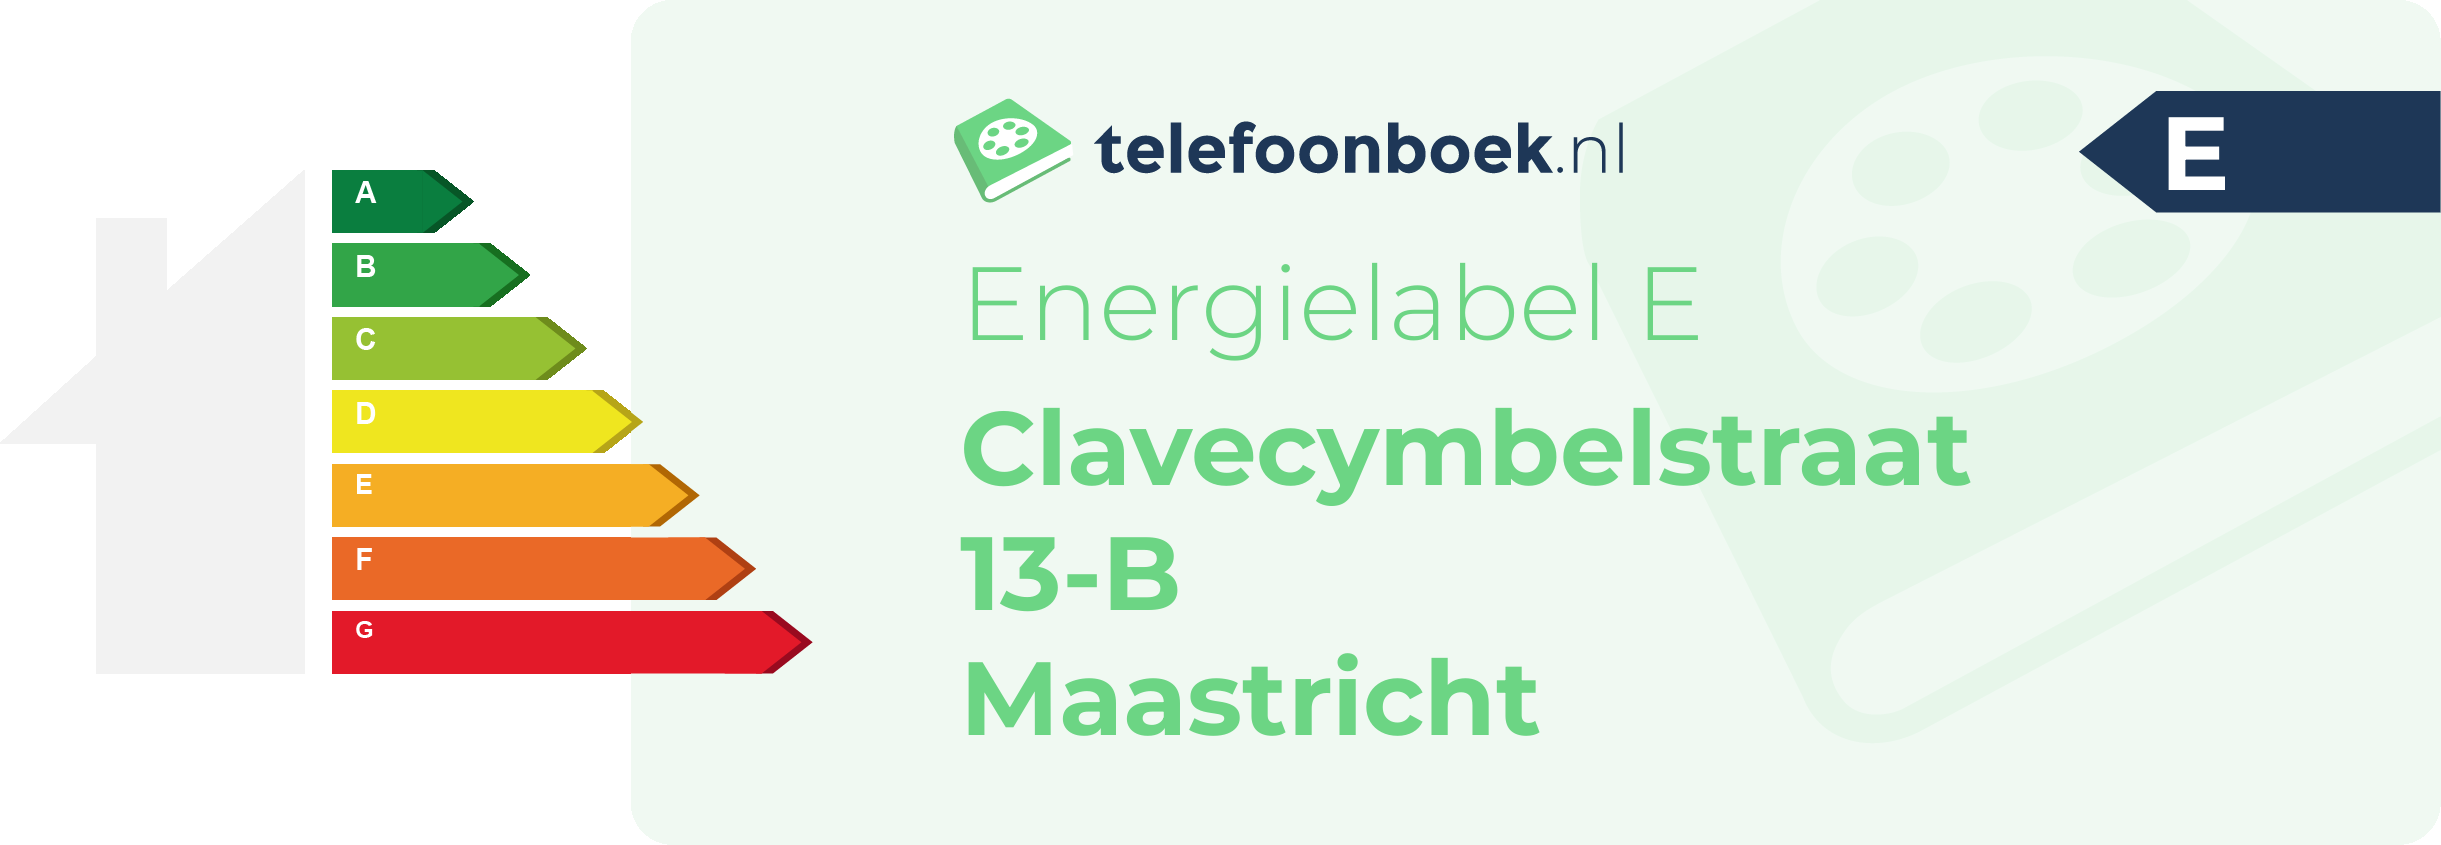 Energielabel Clavecymbelstraat 13-B Maastricht